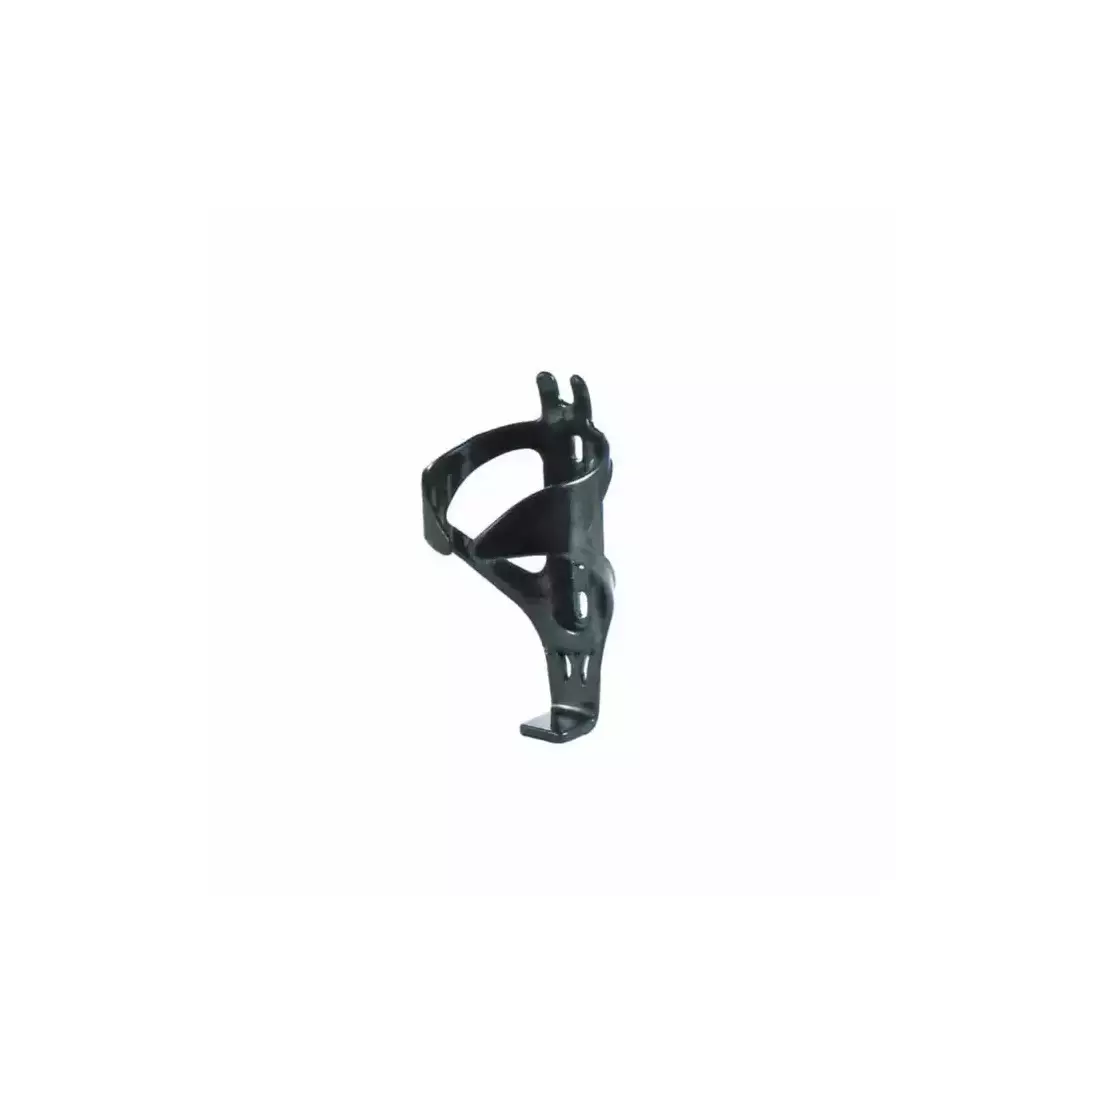 SPENCER cușcă de apă pentru bicicletă JY-9002/BC18, negru